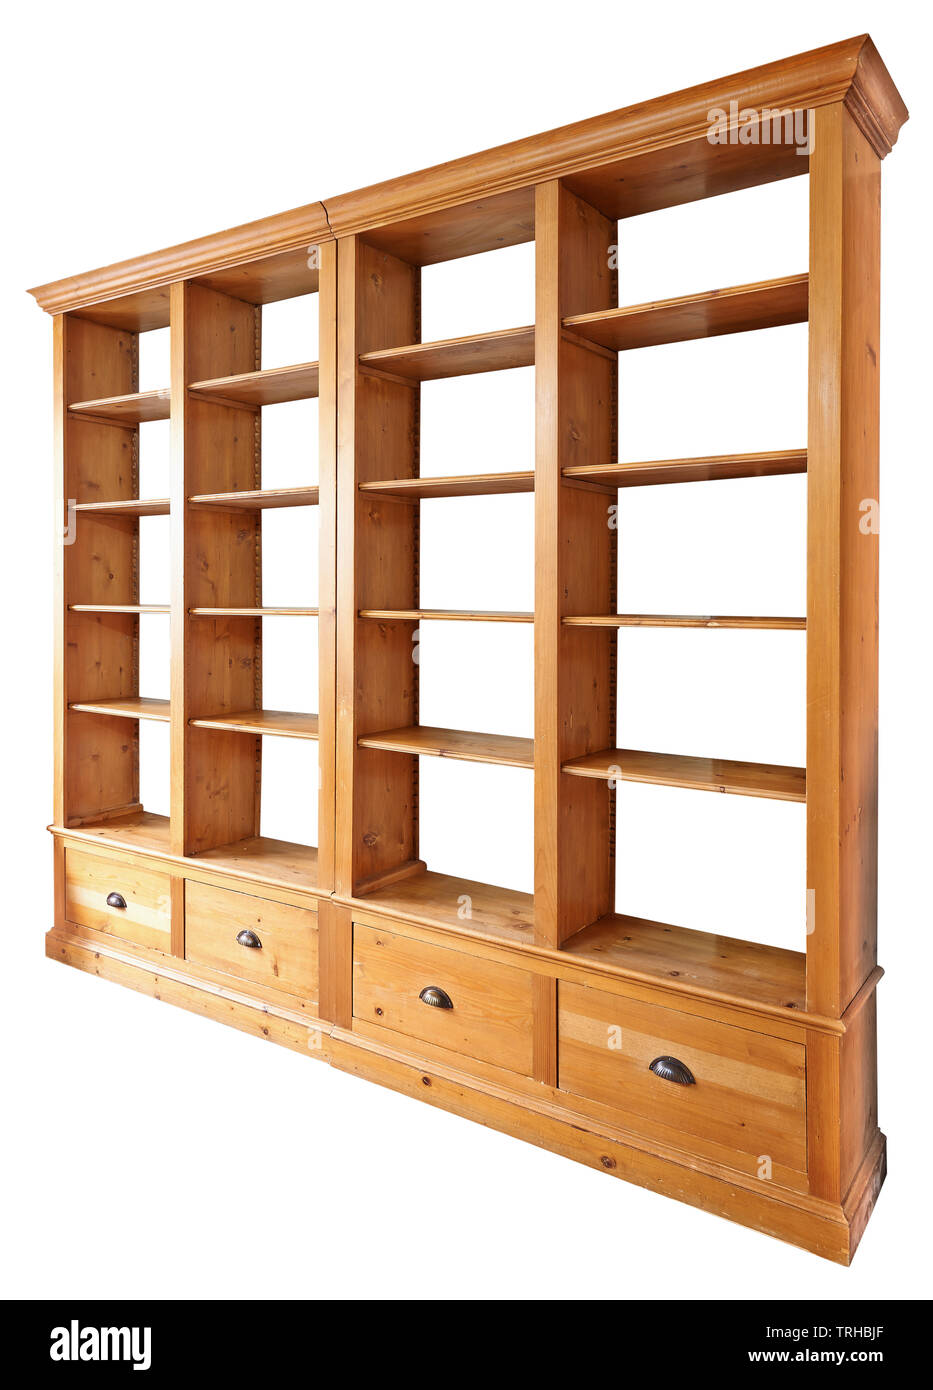 Biblioteca de madera doble vacío en perspectiva aislado en blanco con trazado de recorte Foto de stock